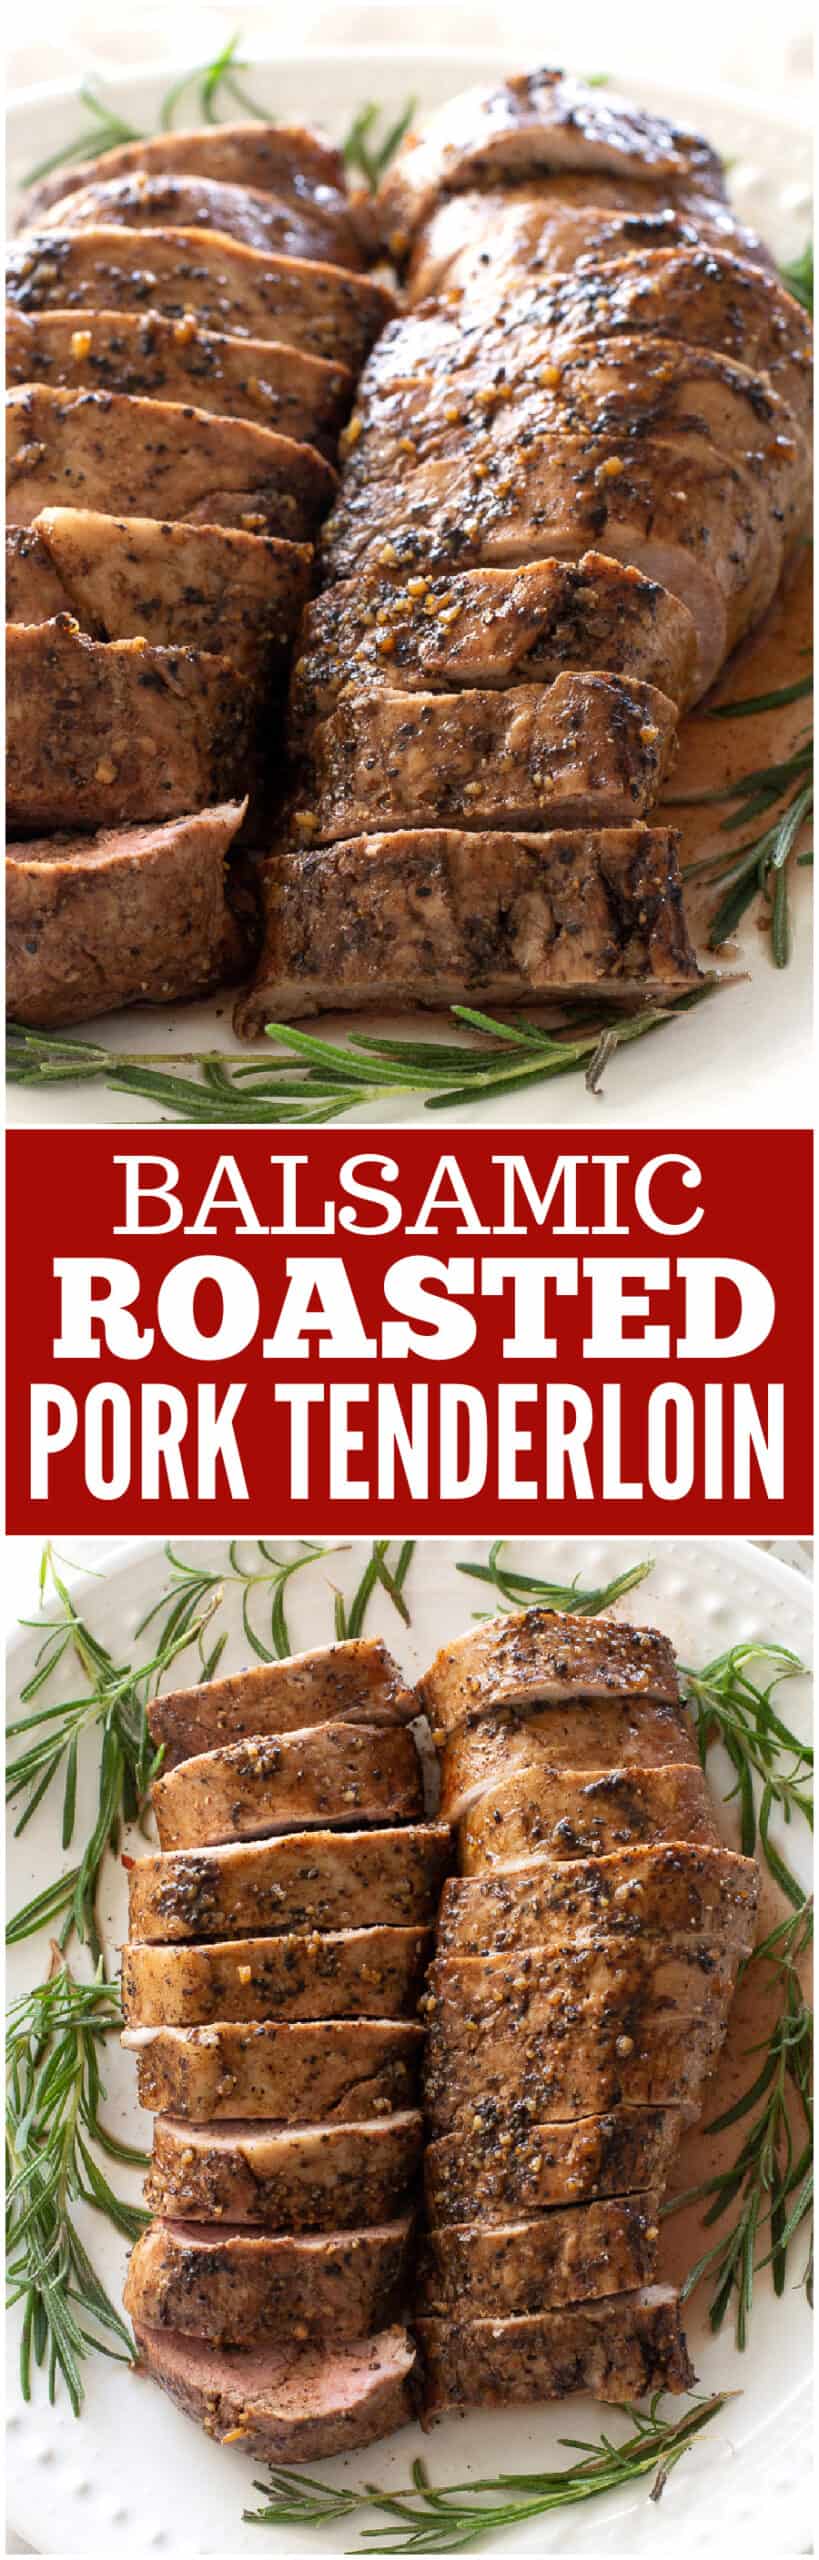 balsamic roasted pork tenderloin